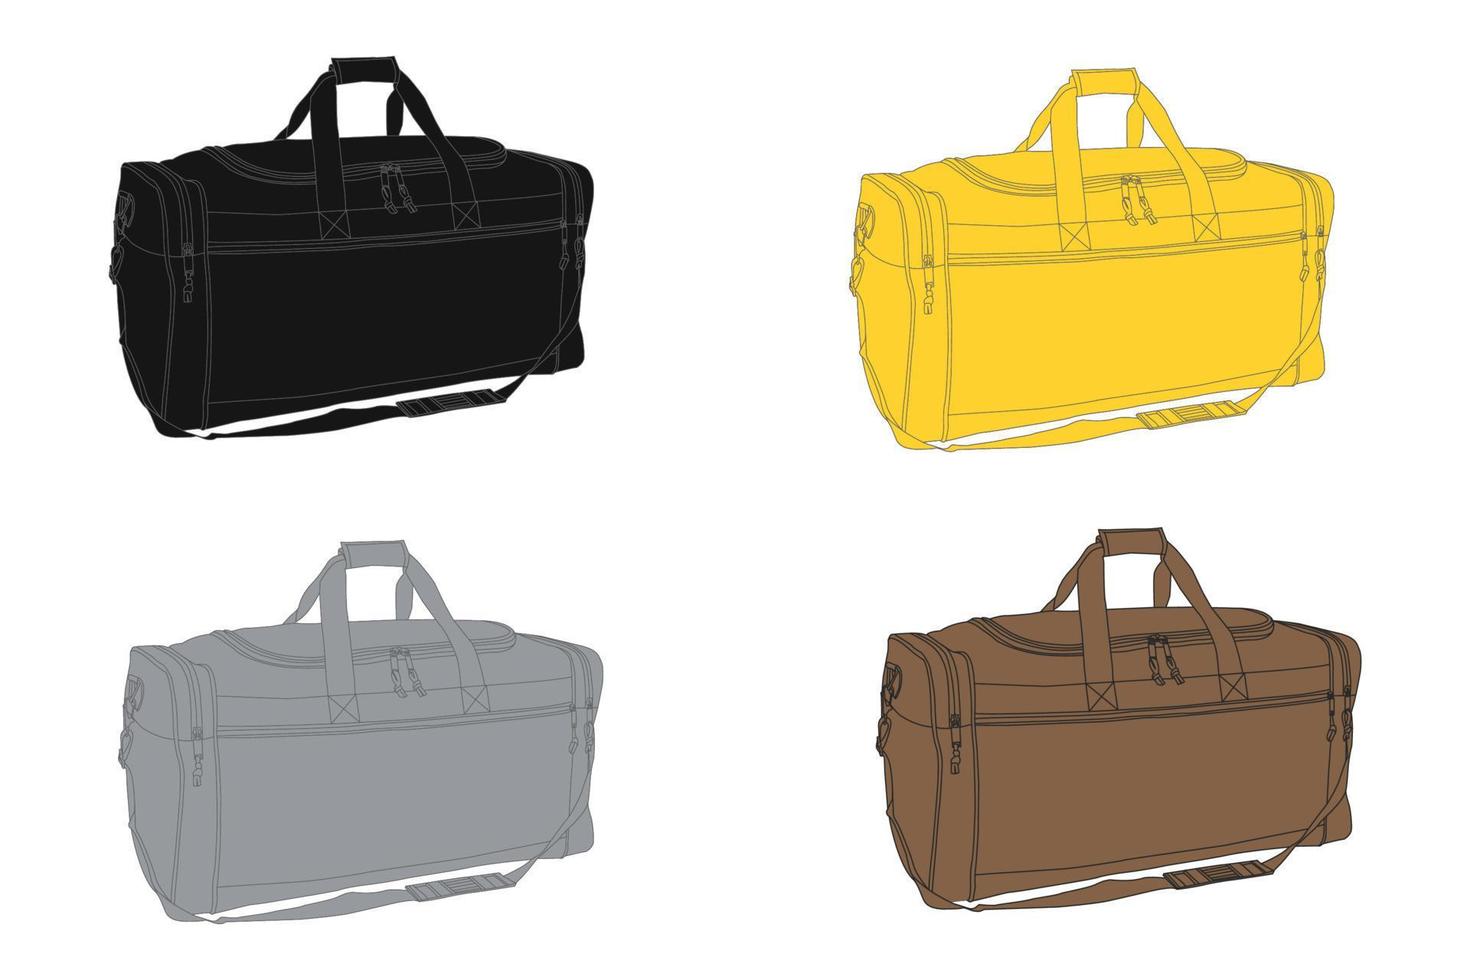 bolsas de lona vectoriales con fondo blanco, bolsa de viaje de cuero de arte lineal, bolsa de fin de semana. vector